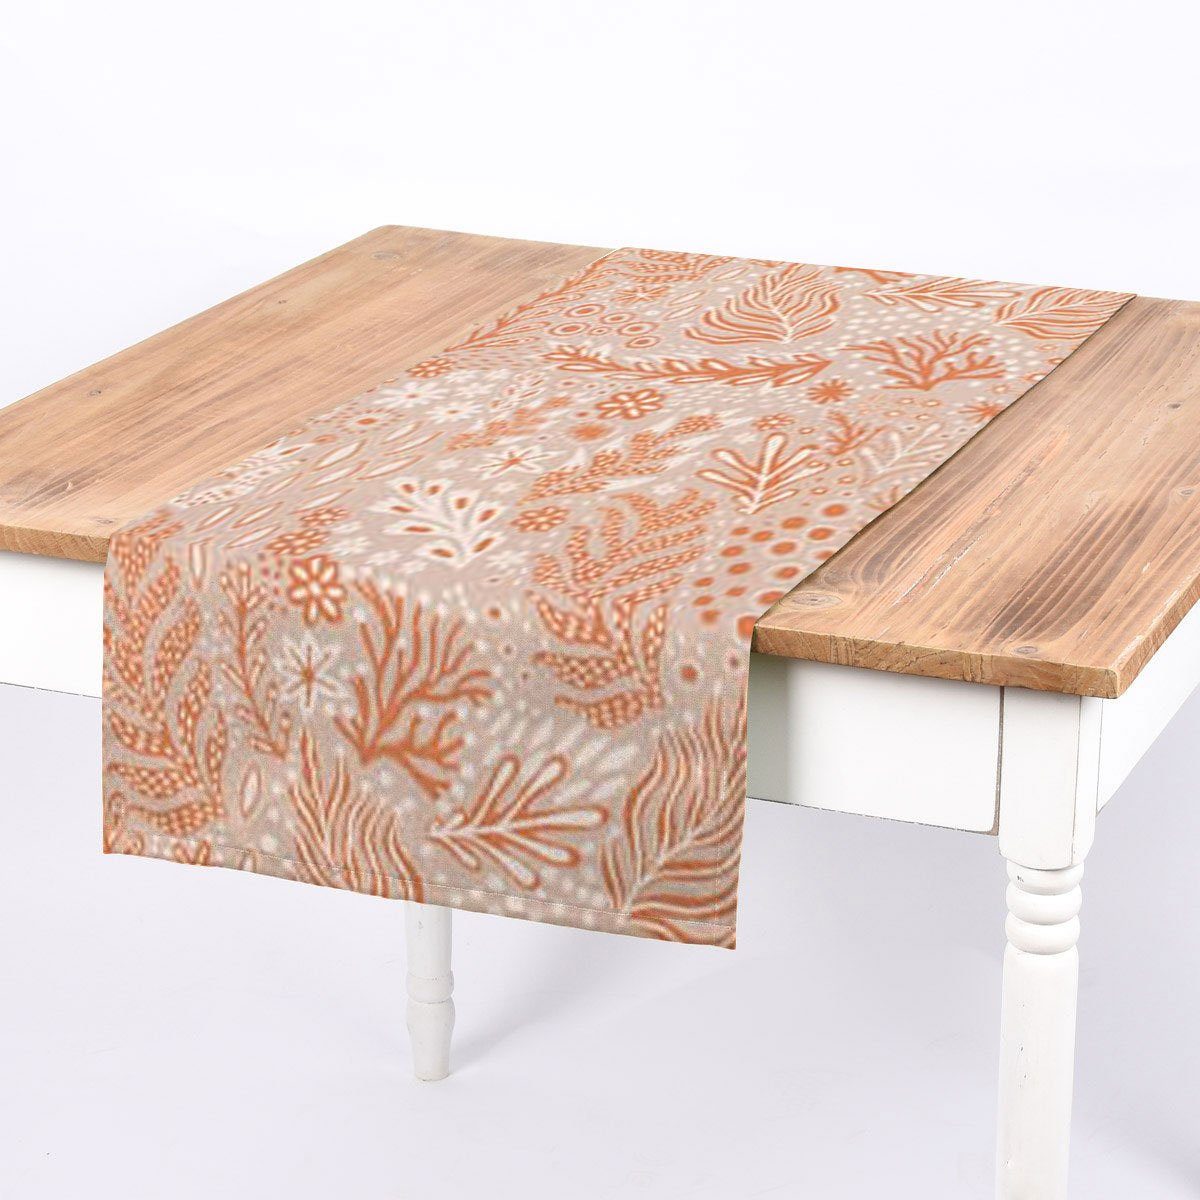 SCHÖNER LEBEN. Tischläufer SCHÖNER LEBEN. Tischläufer aus Baumwolle Blätter Blumen Gräser gra, Digitaldruck